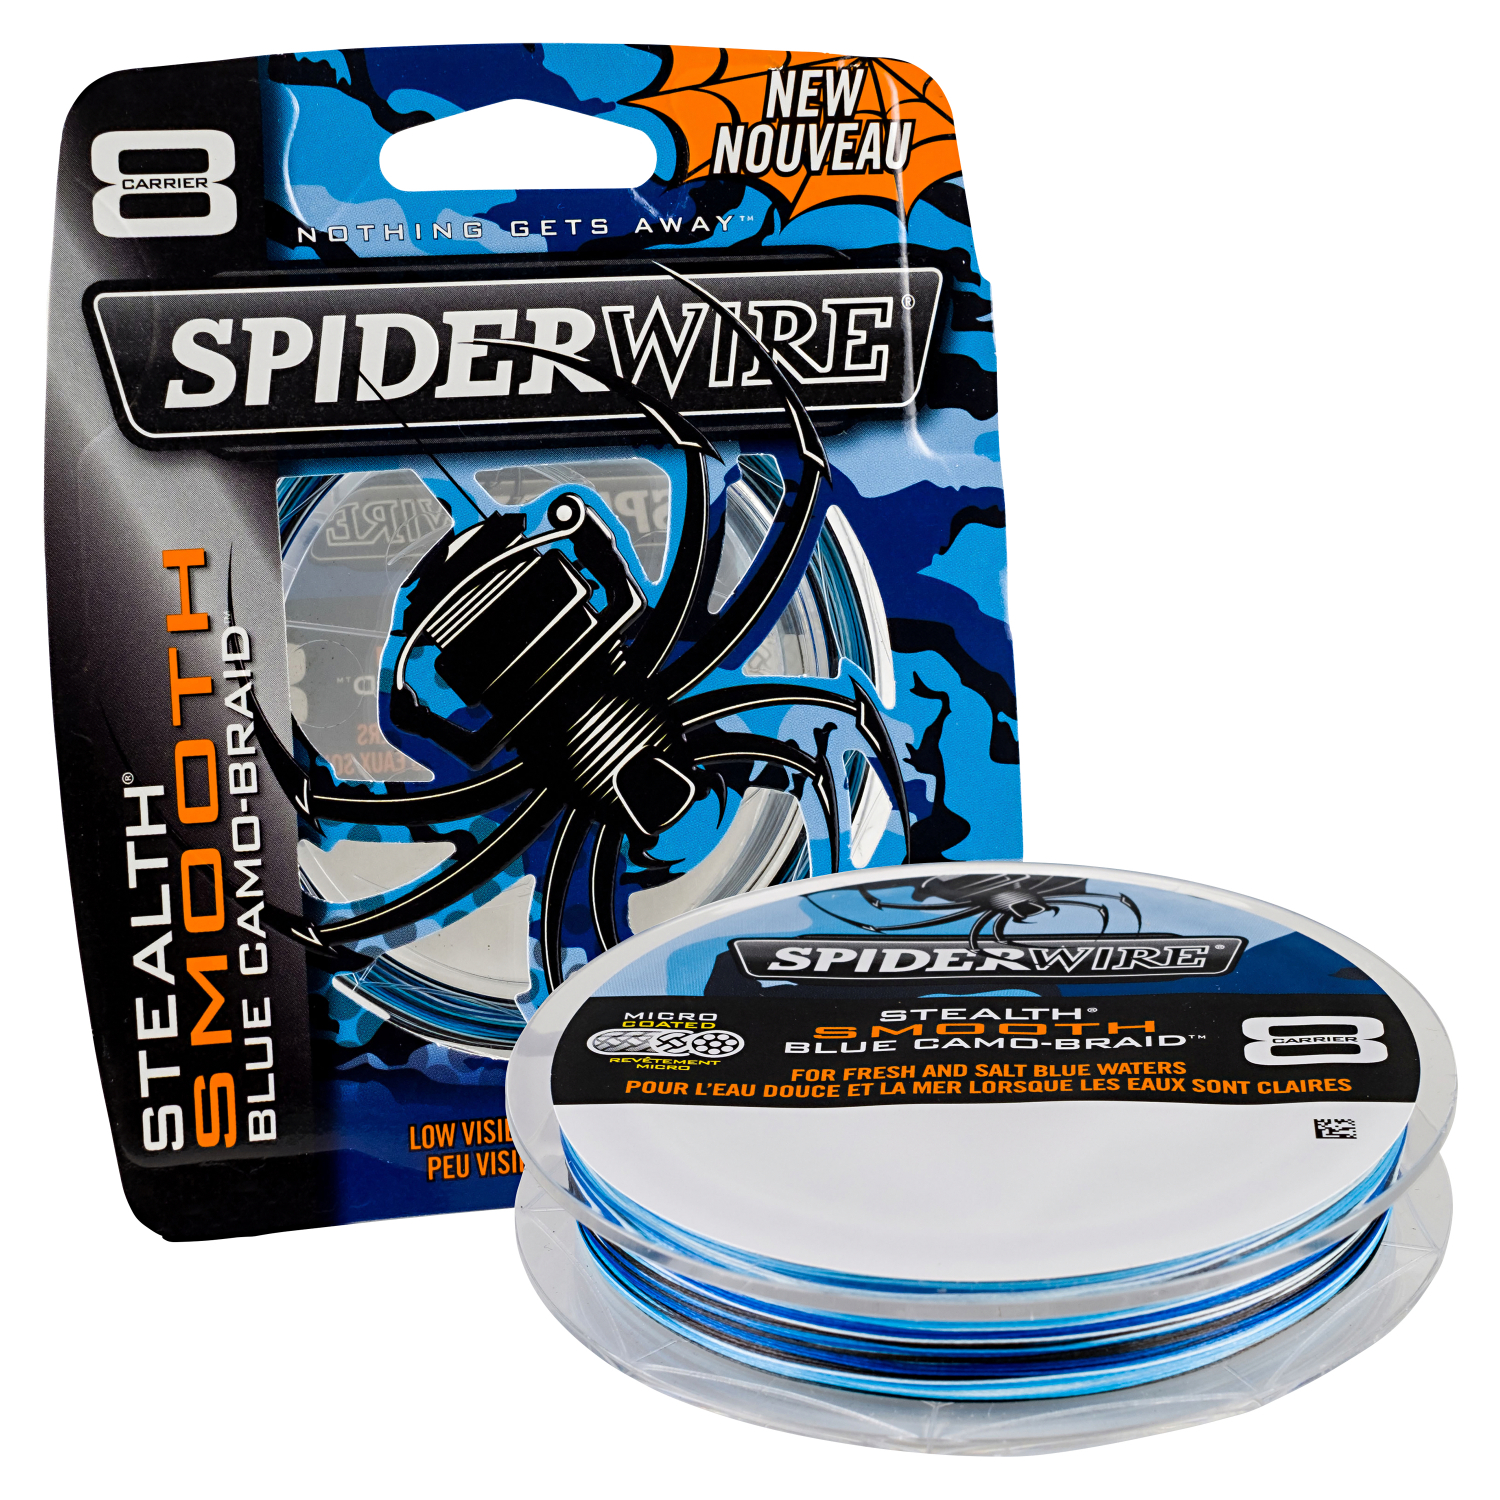 Spiderwire Spiderwire Angelschnur Stealth Smooth 8 (blue camo) 